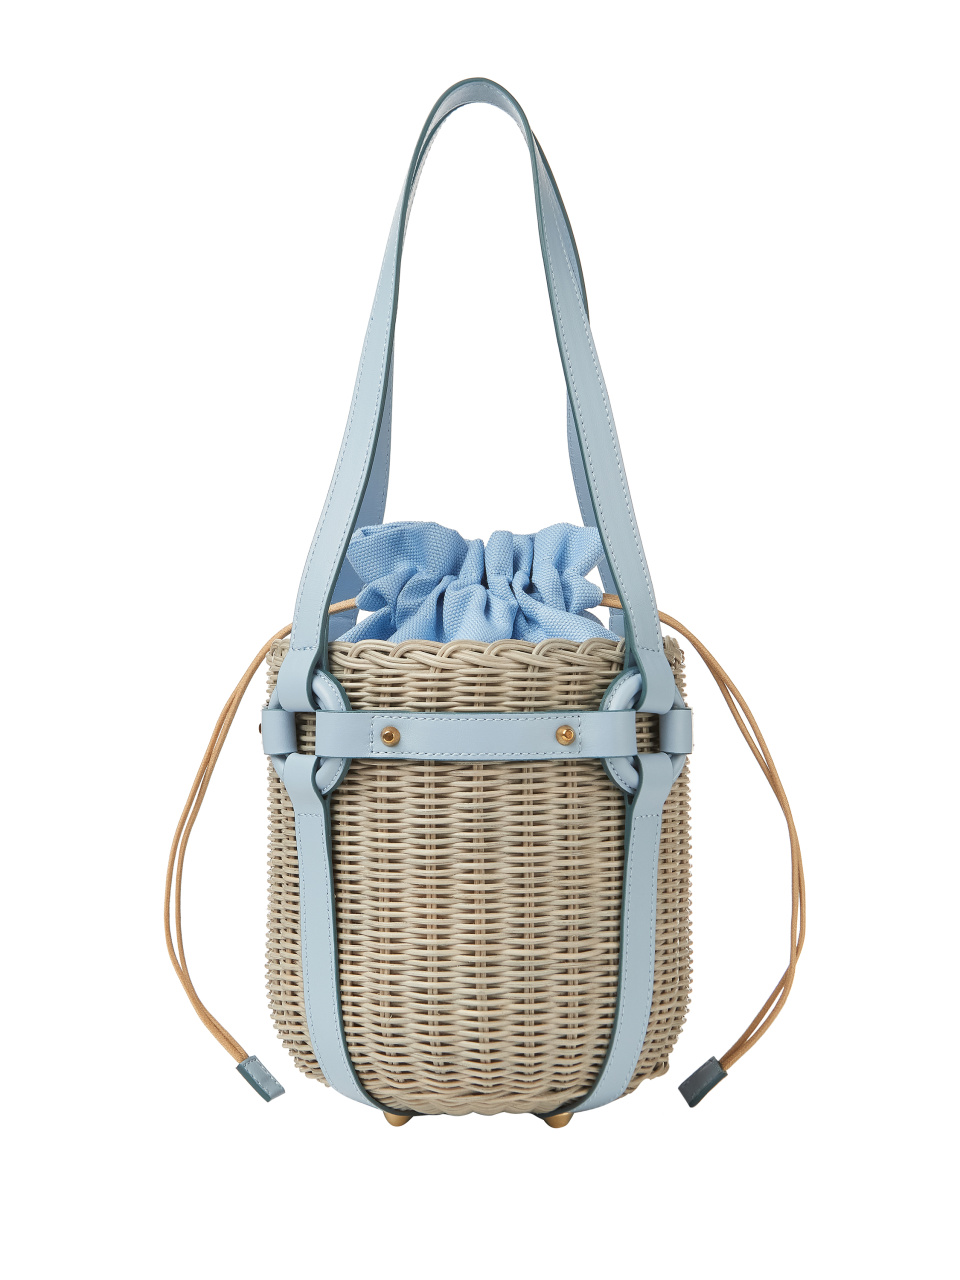 Плетеная сумка-ведро с голубой кожаной отделкой, 1